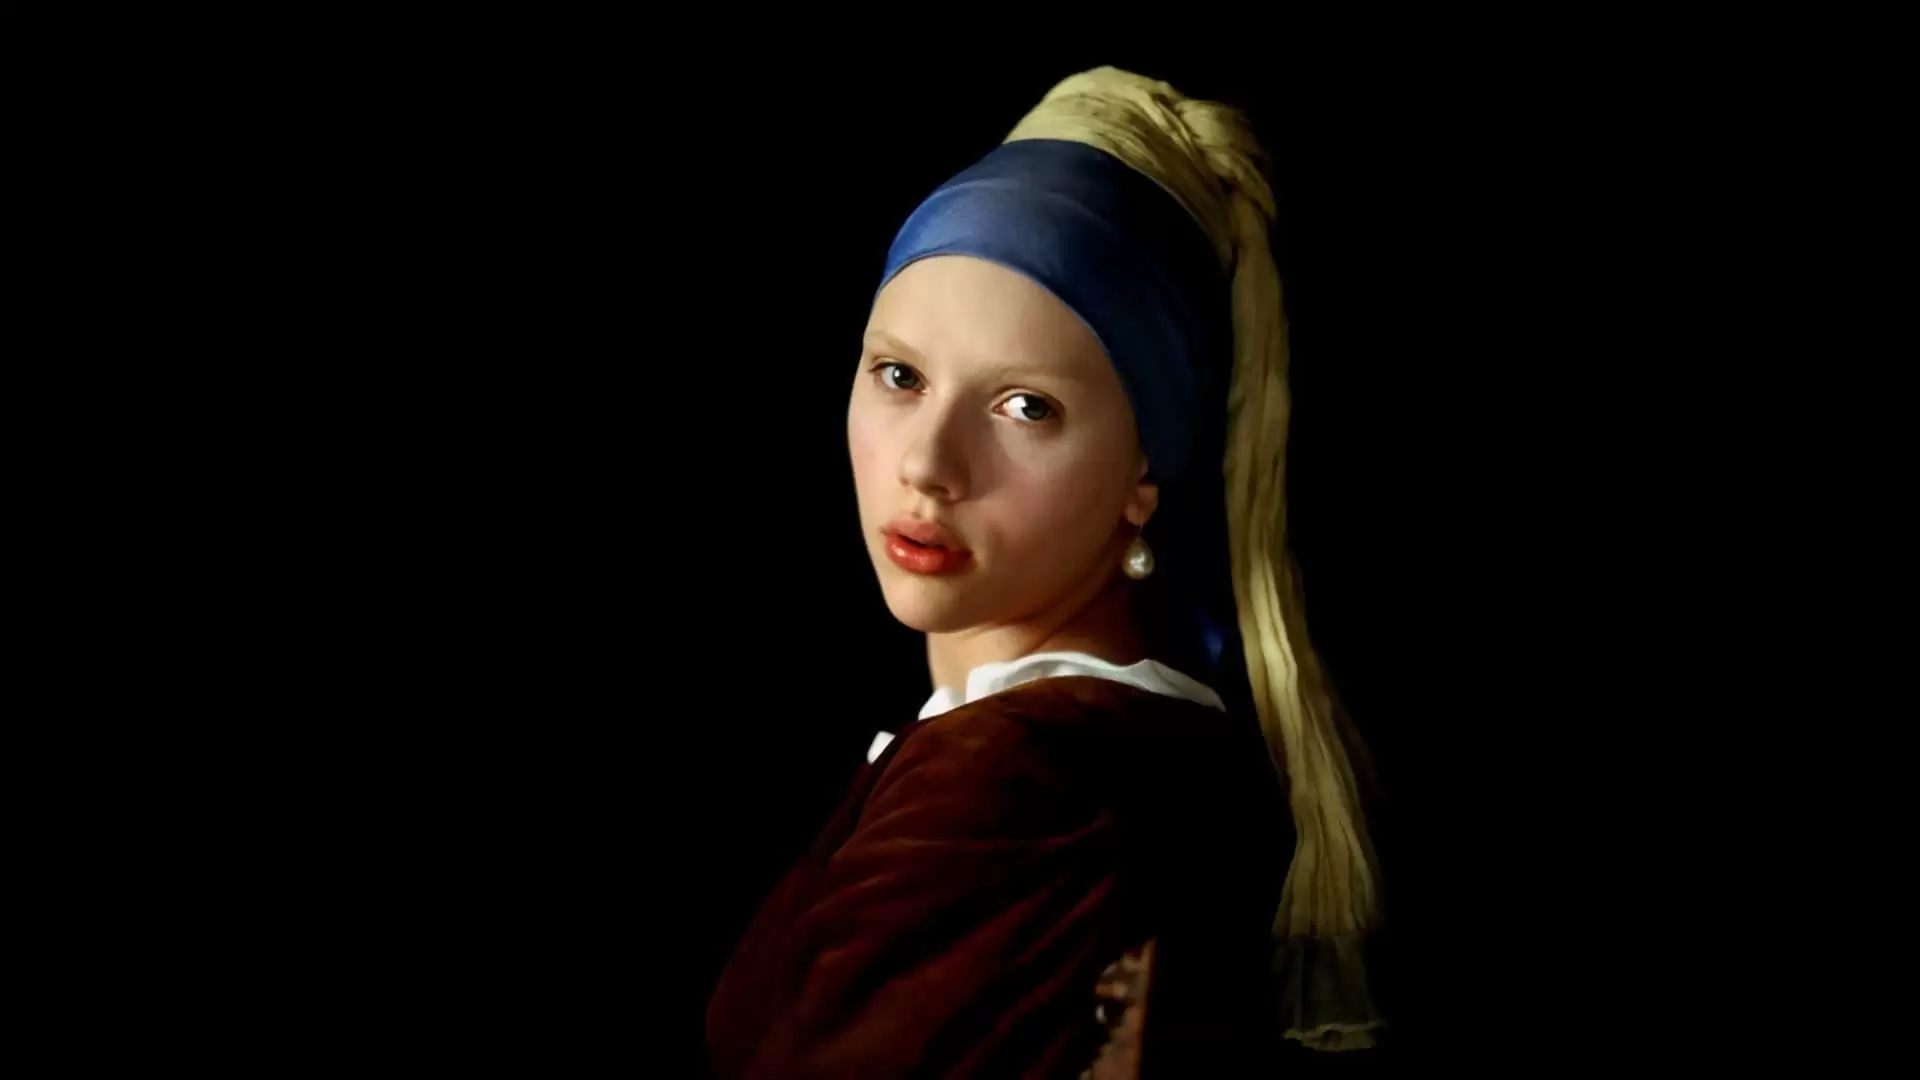 دانلود فیلم Girl with a Pearl Earring 2003 (دختری با گوشواره مروارید) با زیرنویس فارسی و تماشای آنلاین